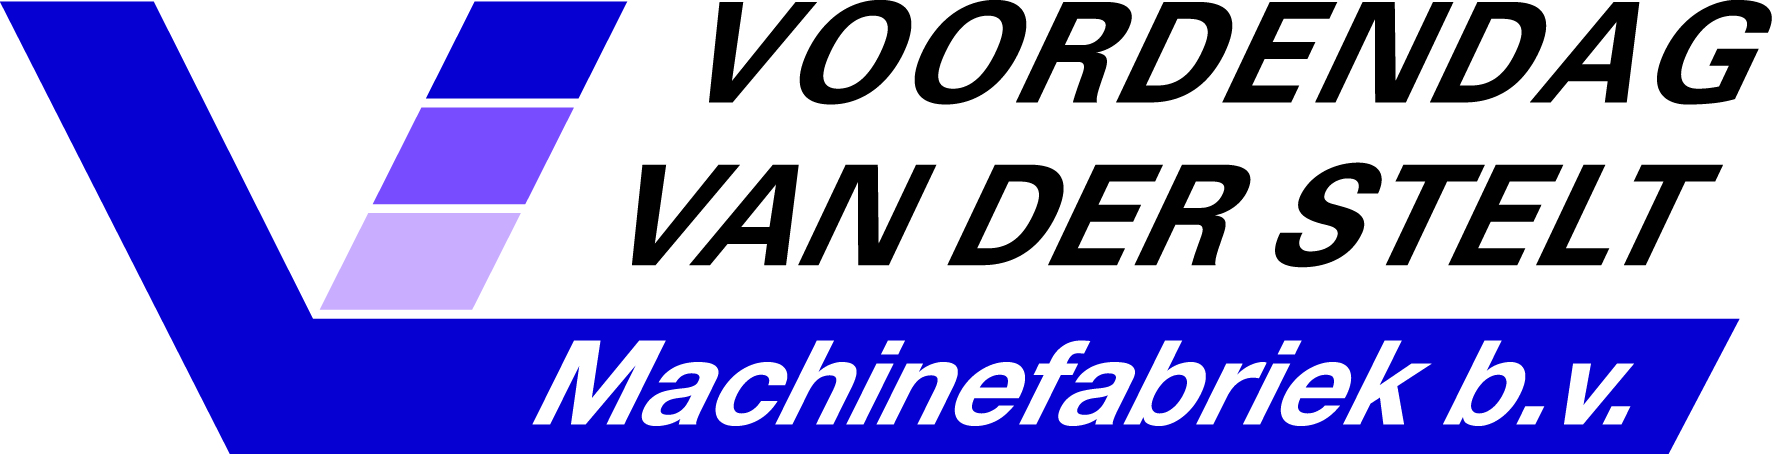 Logo Voordendag van der Stelt machinefabriek B.V.